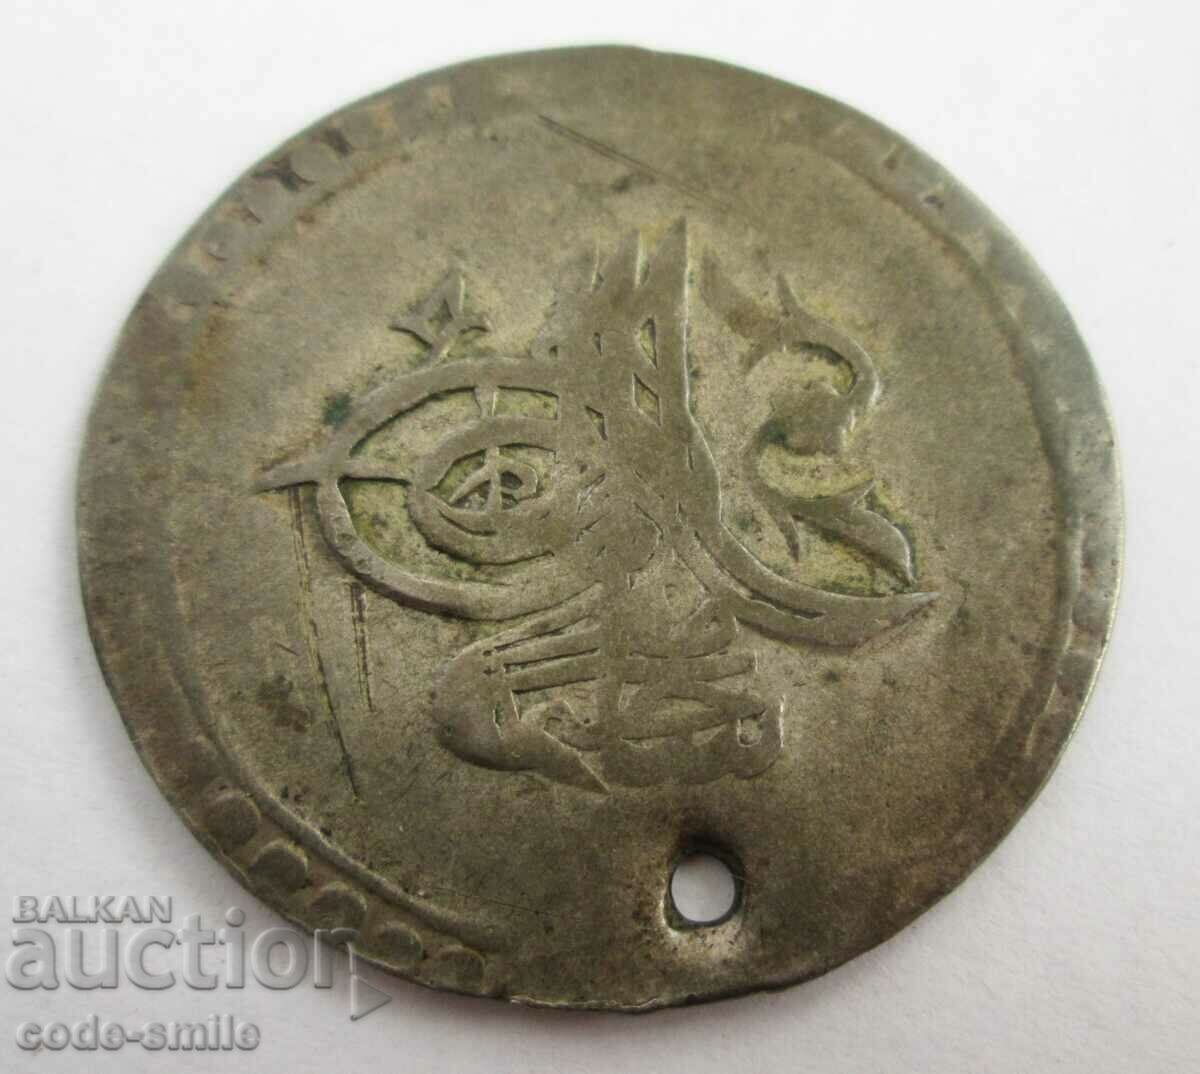 Monedă veche turcească de argint otomană perforată pentru bijuterii